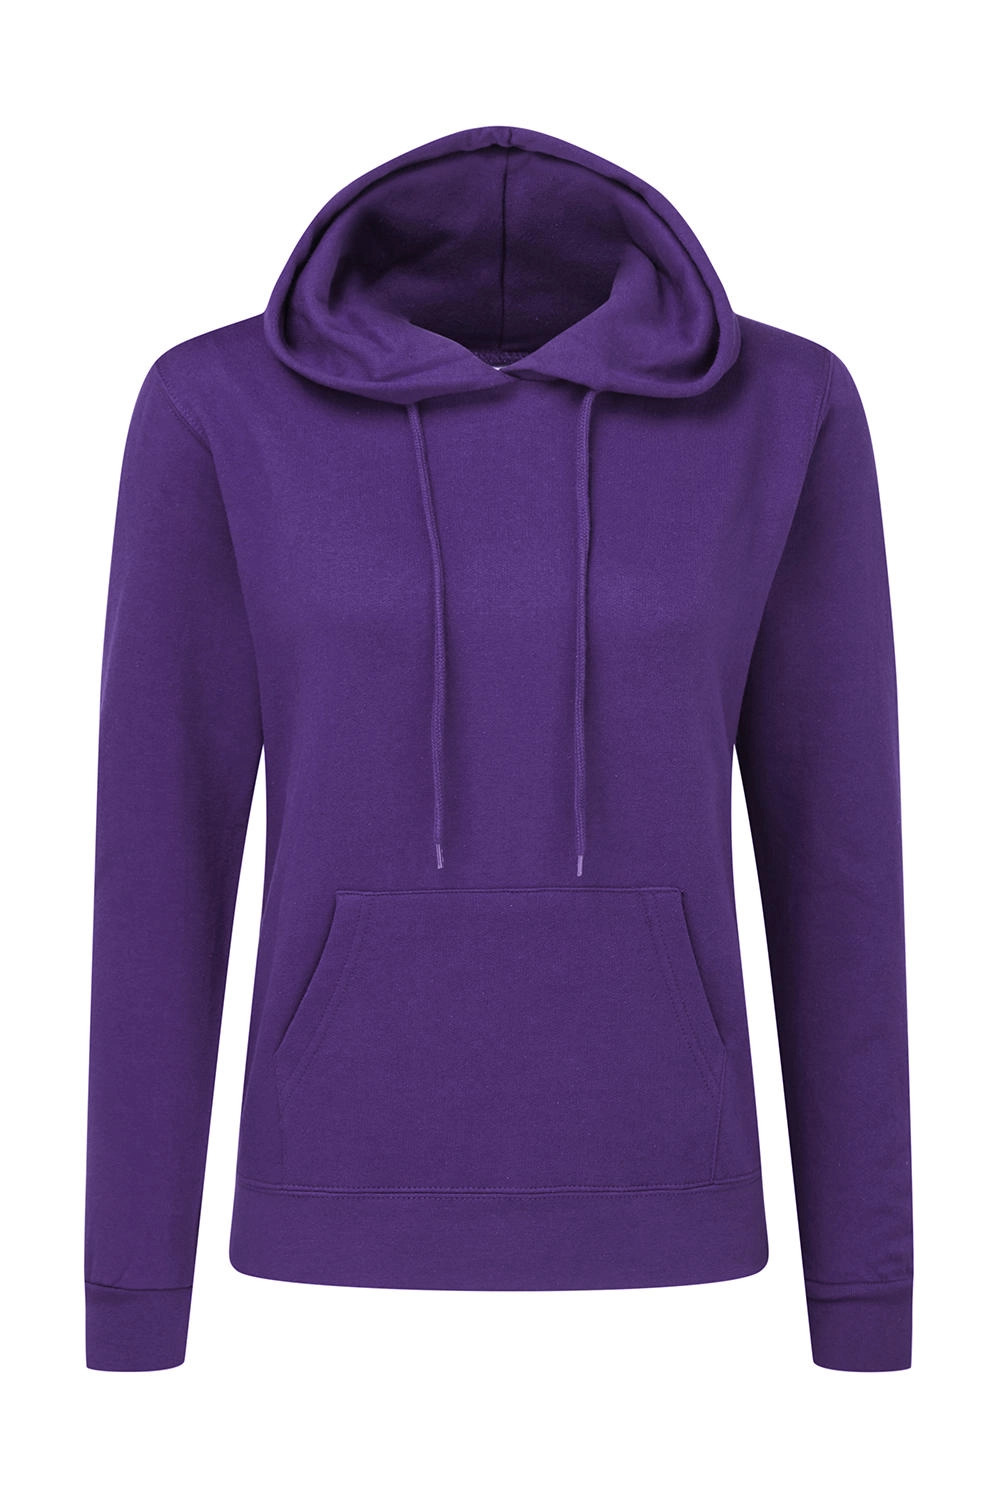 Hooded Sweatshirt Women zum Besticken und Bedrucken in der Farbe Purple mit Ihren Logo, Schriftzug oder Motiv.